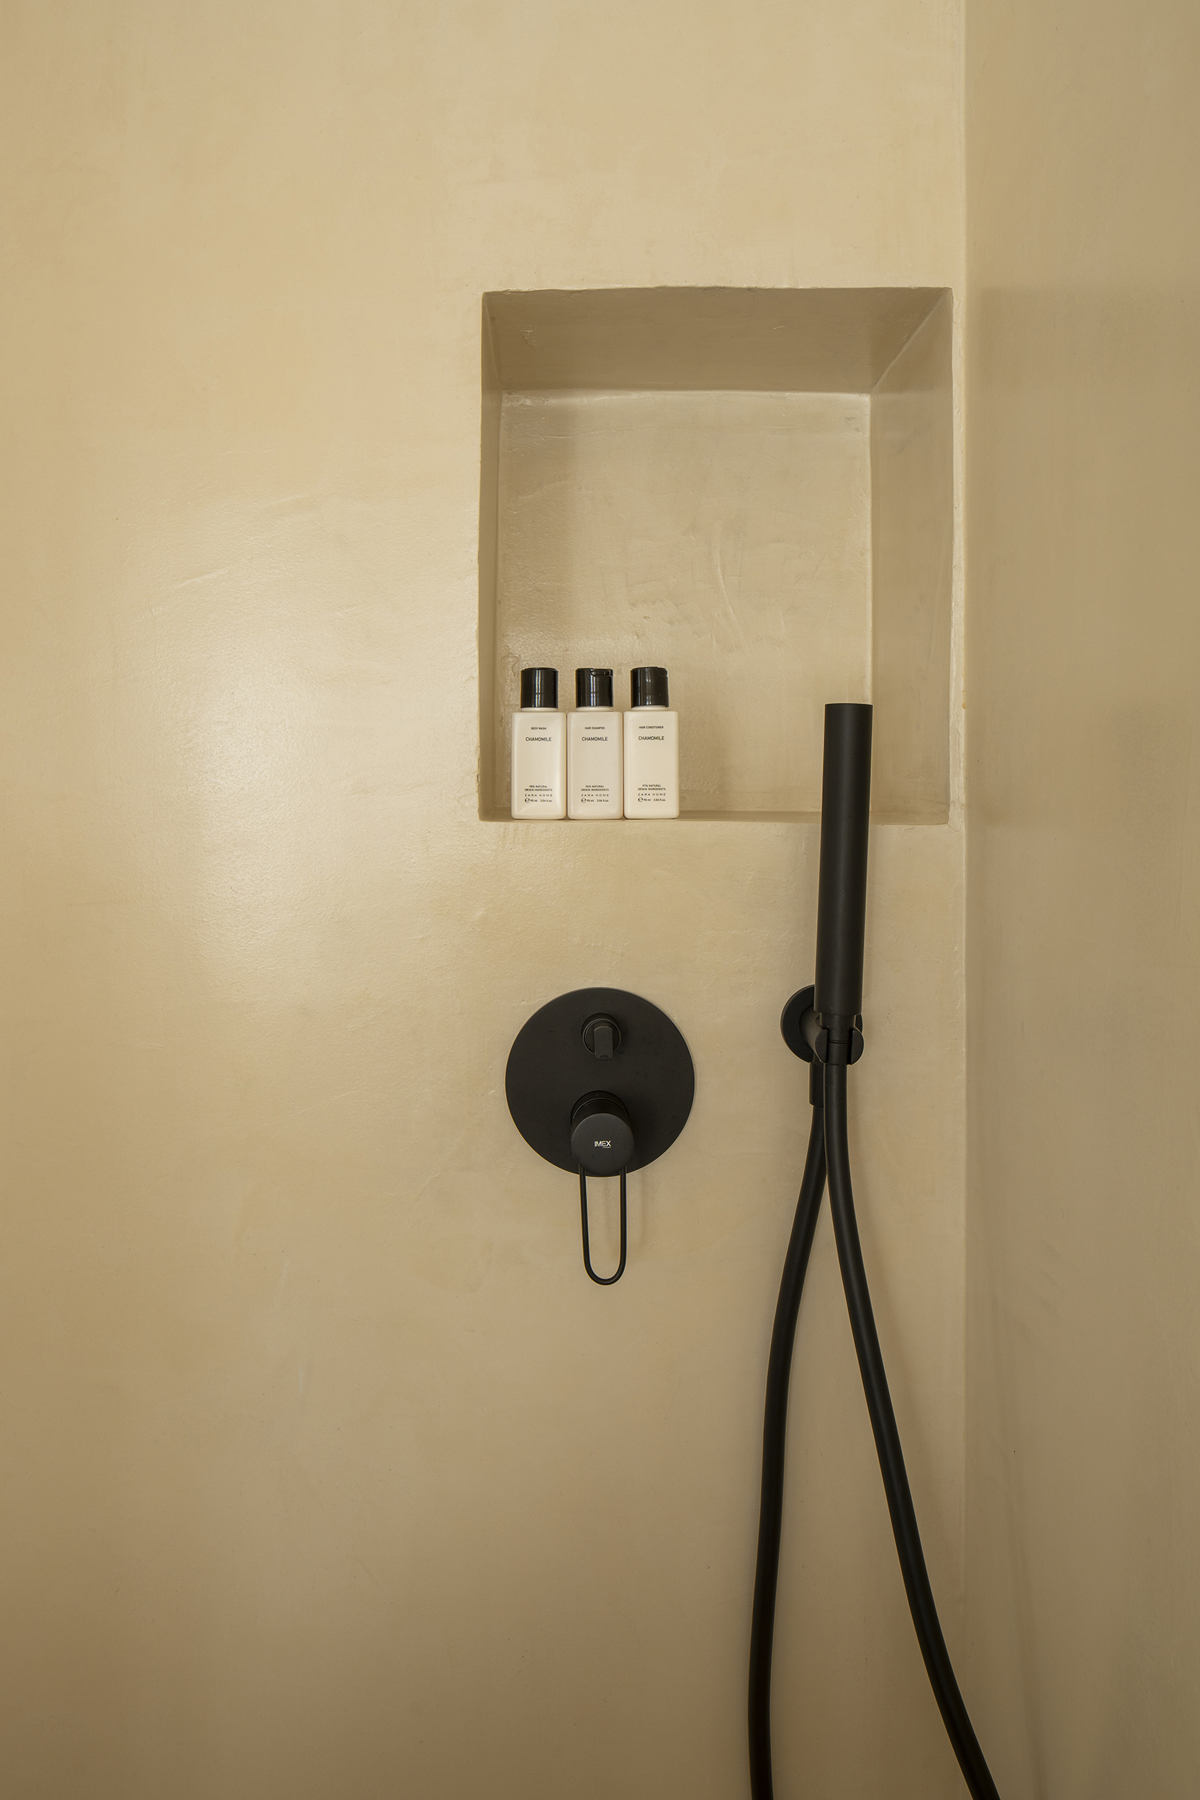 Mikrozement an der Duschwand im Projekt Jara in Granada.